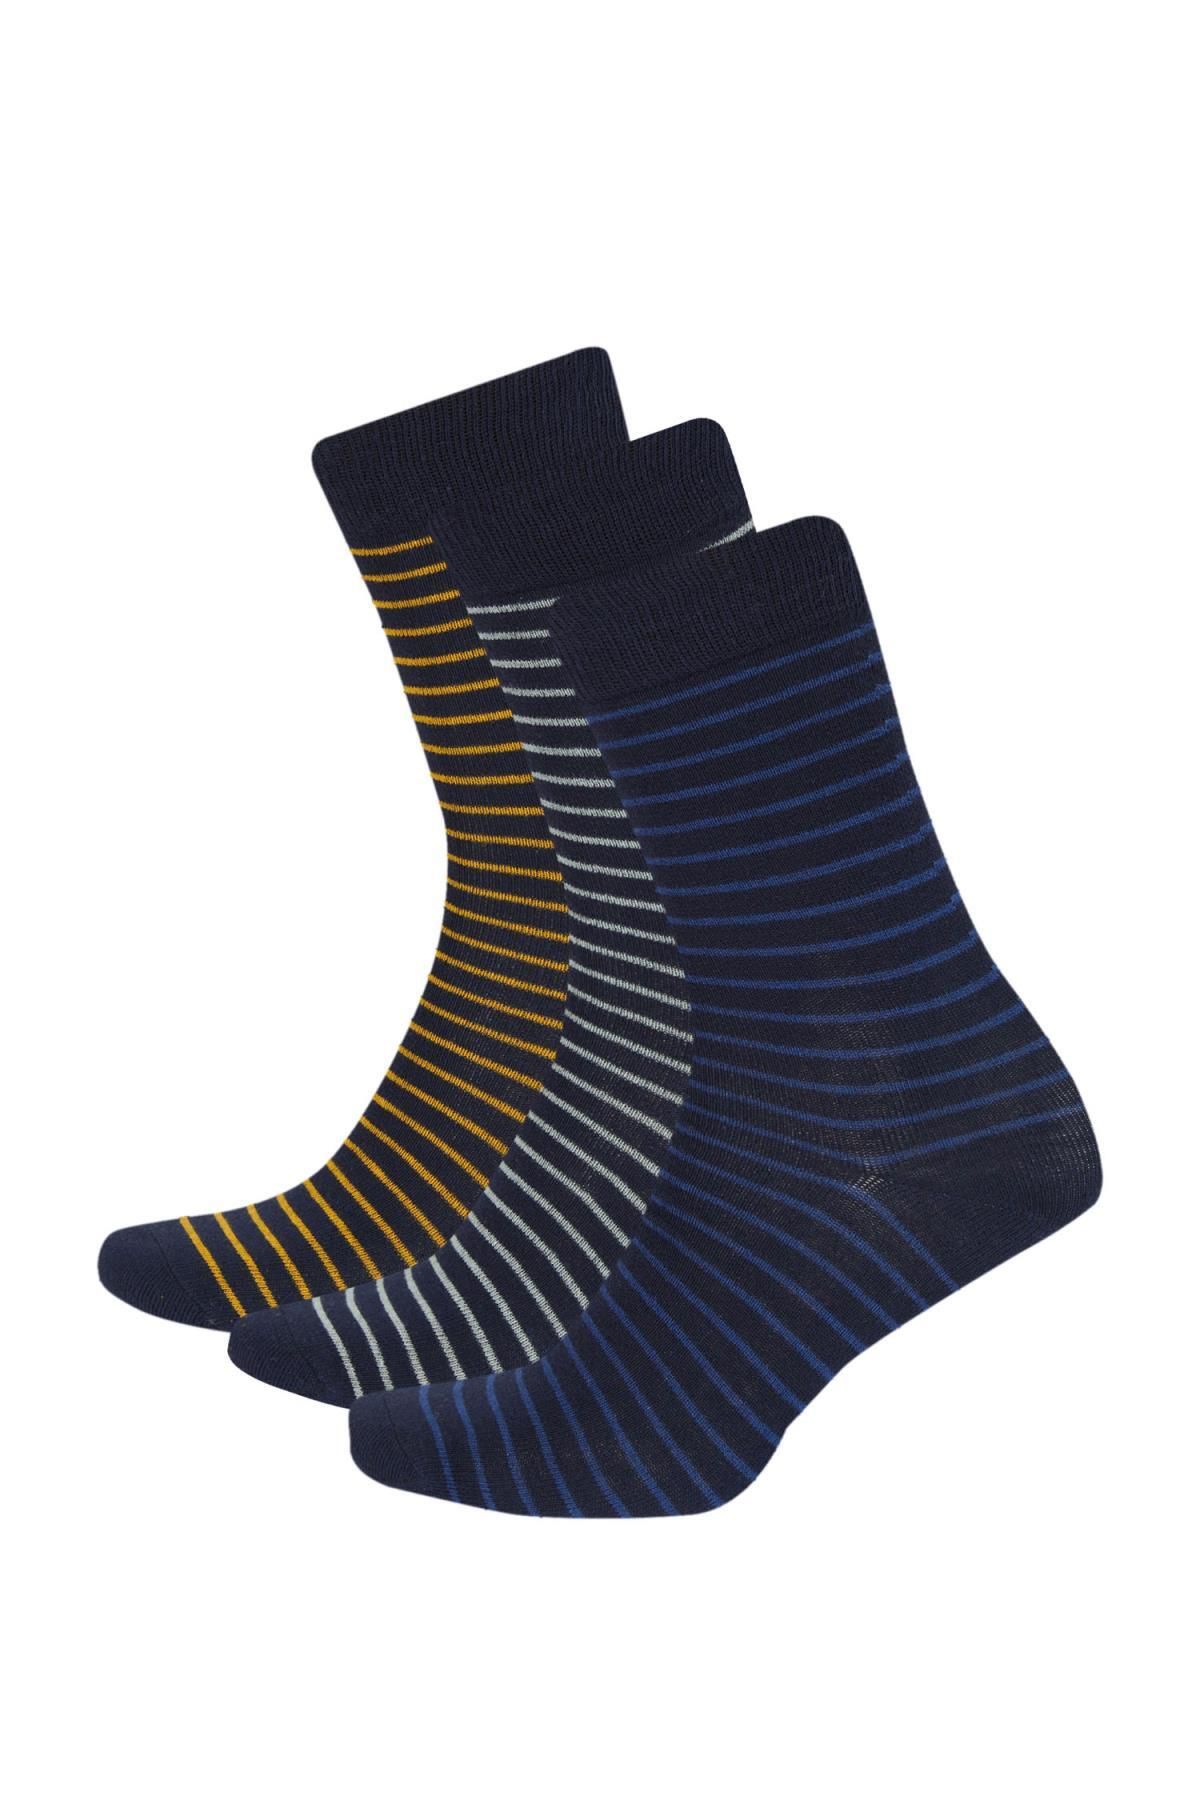 Defacto Erkek 3'lü Pamuklu Uzun Çorap C1004axns